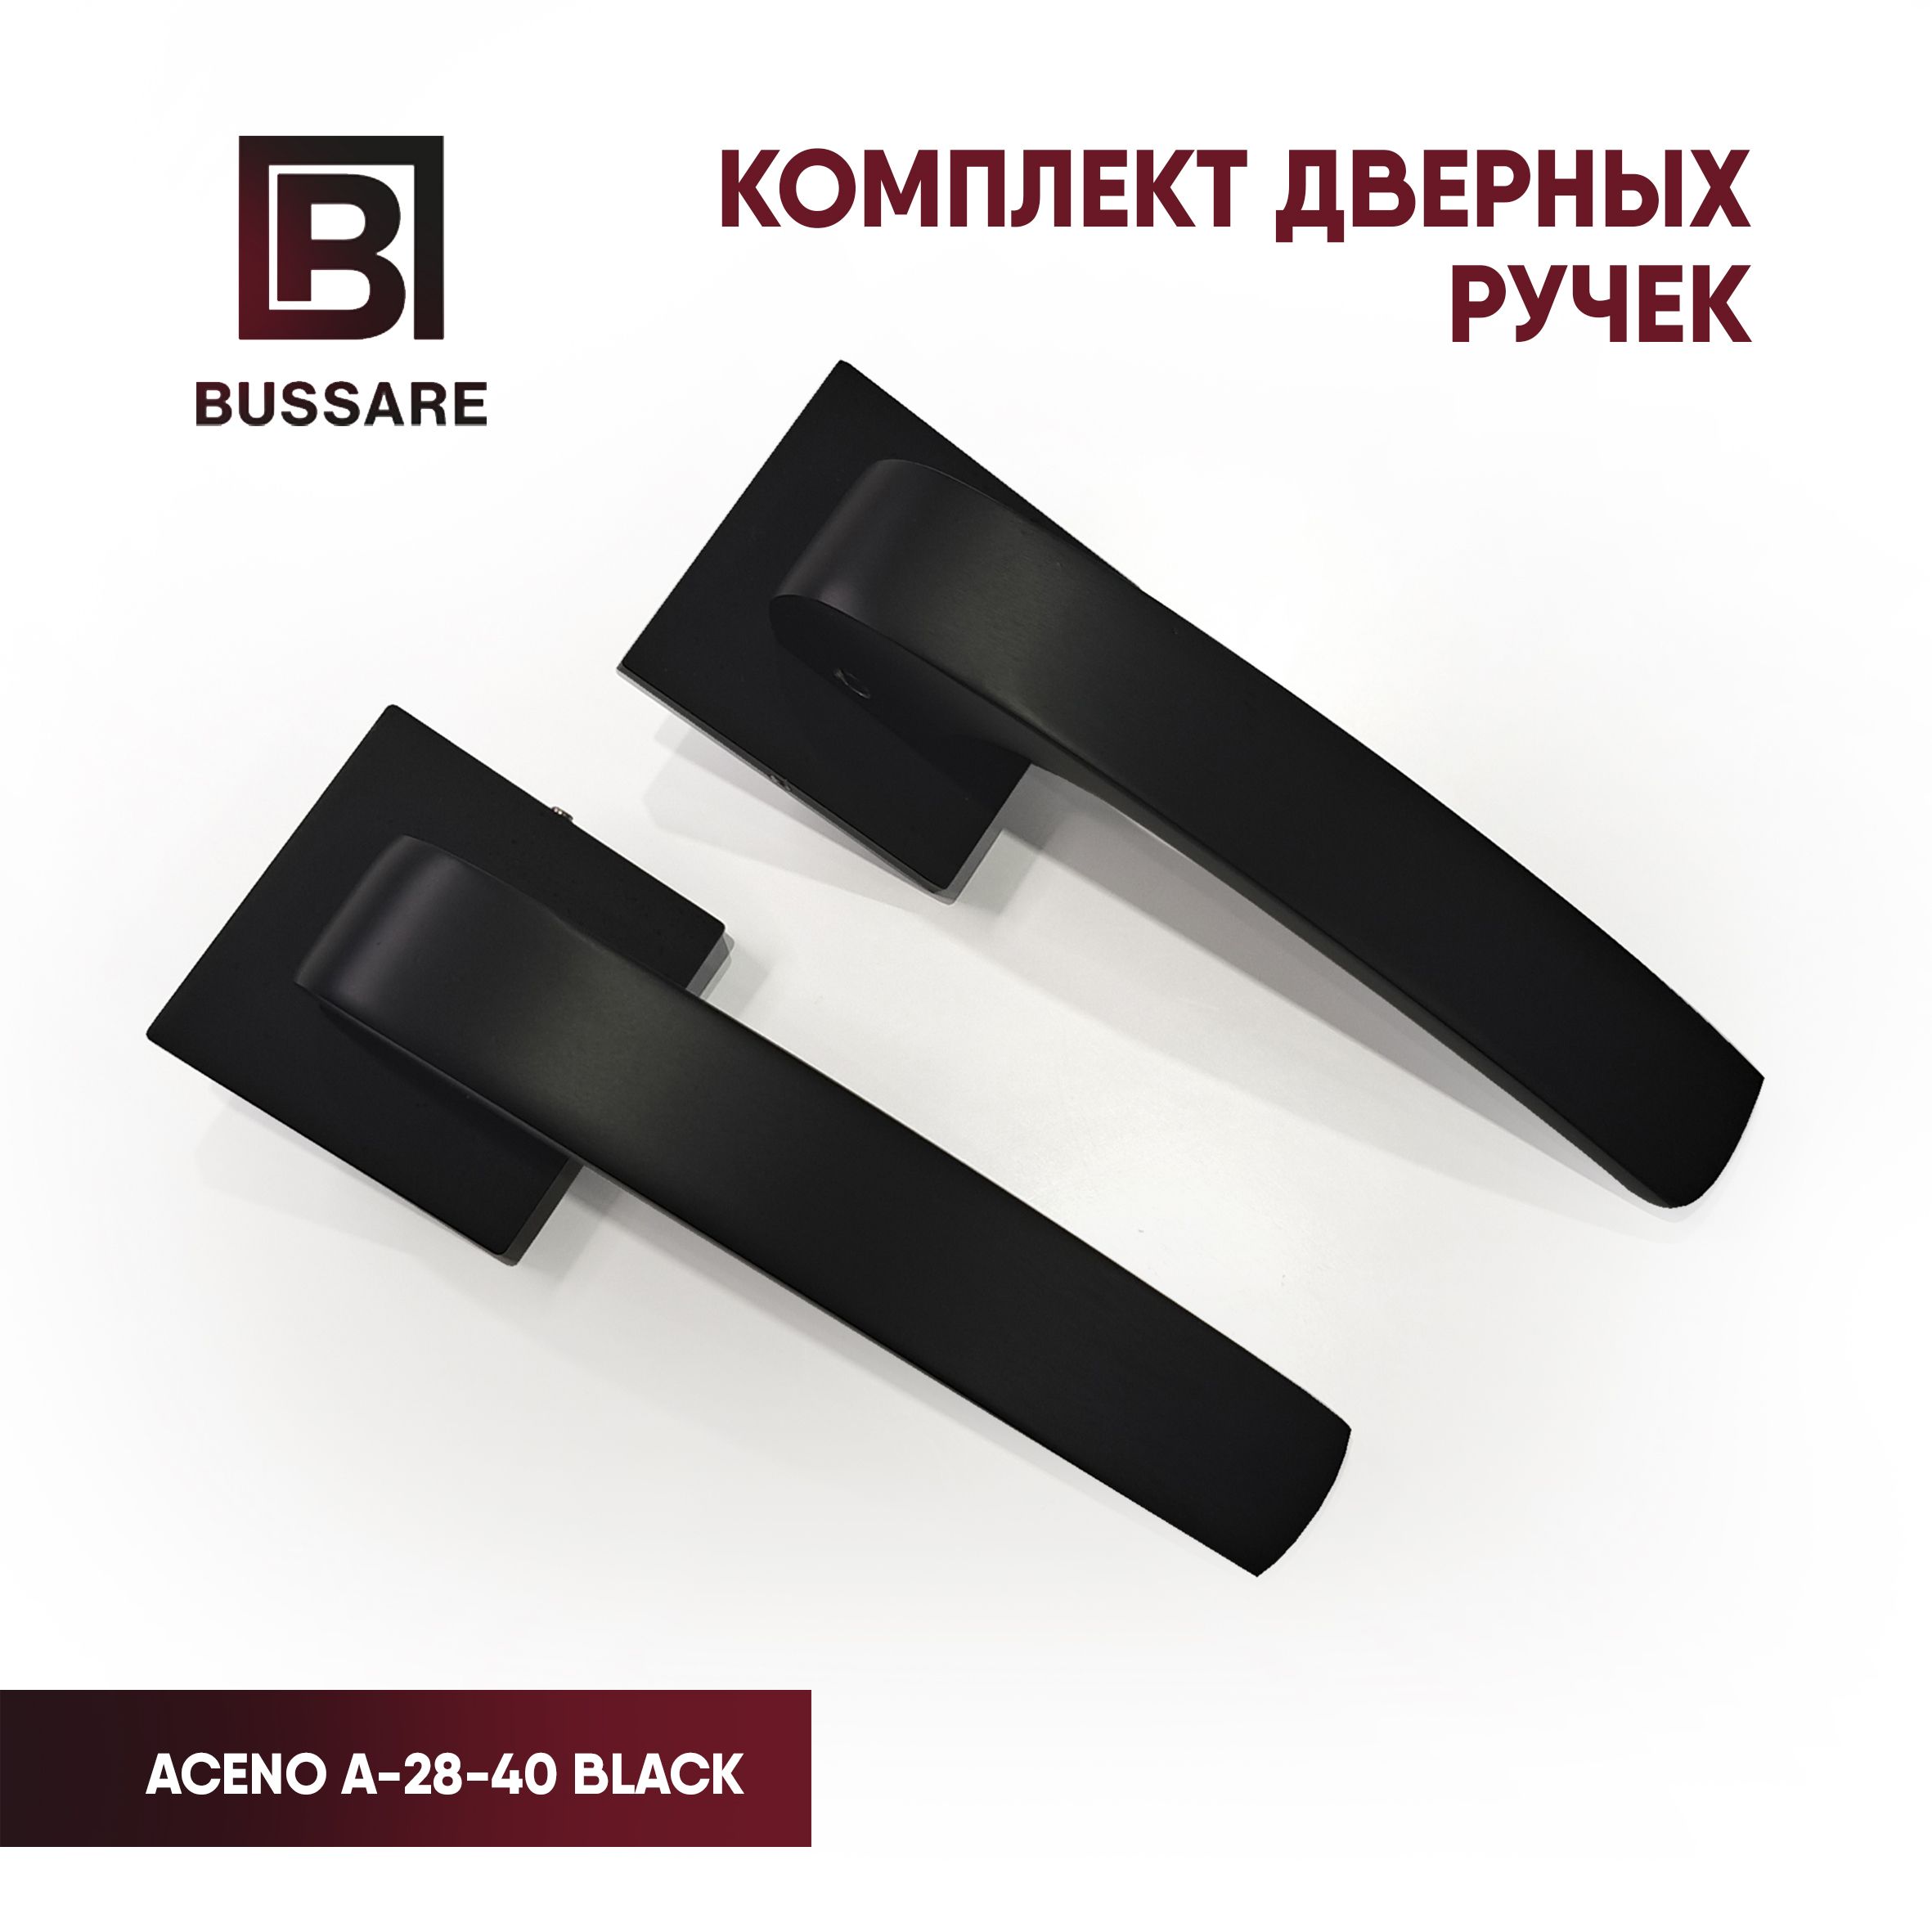 РучкадвернаяBUSSAREACENOA-28-40BLACK(черныйматовый)межкомнатнаянараздельномосновании,комплект